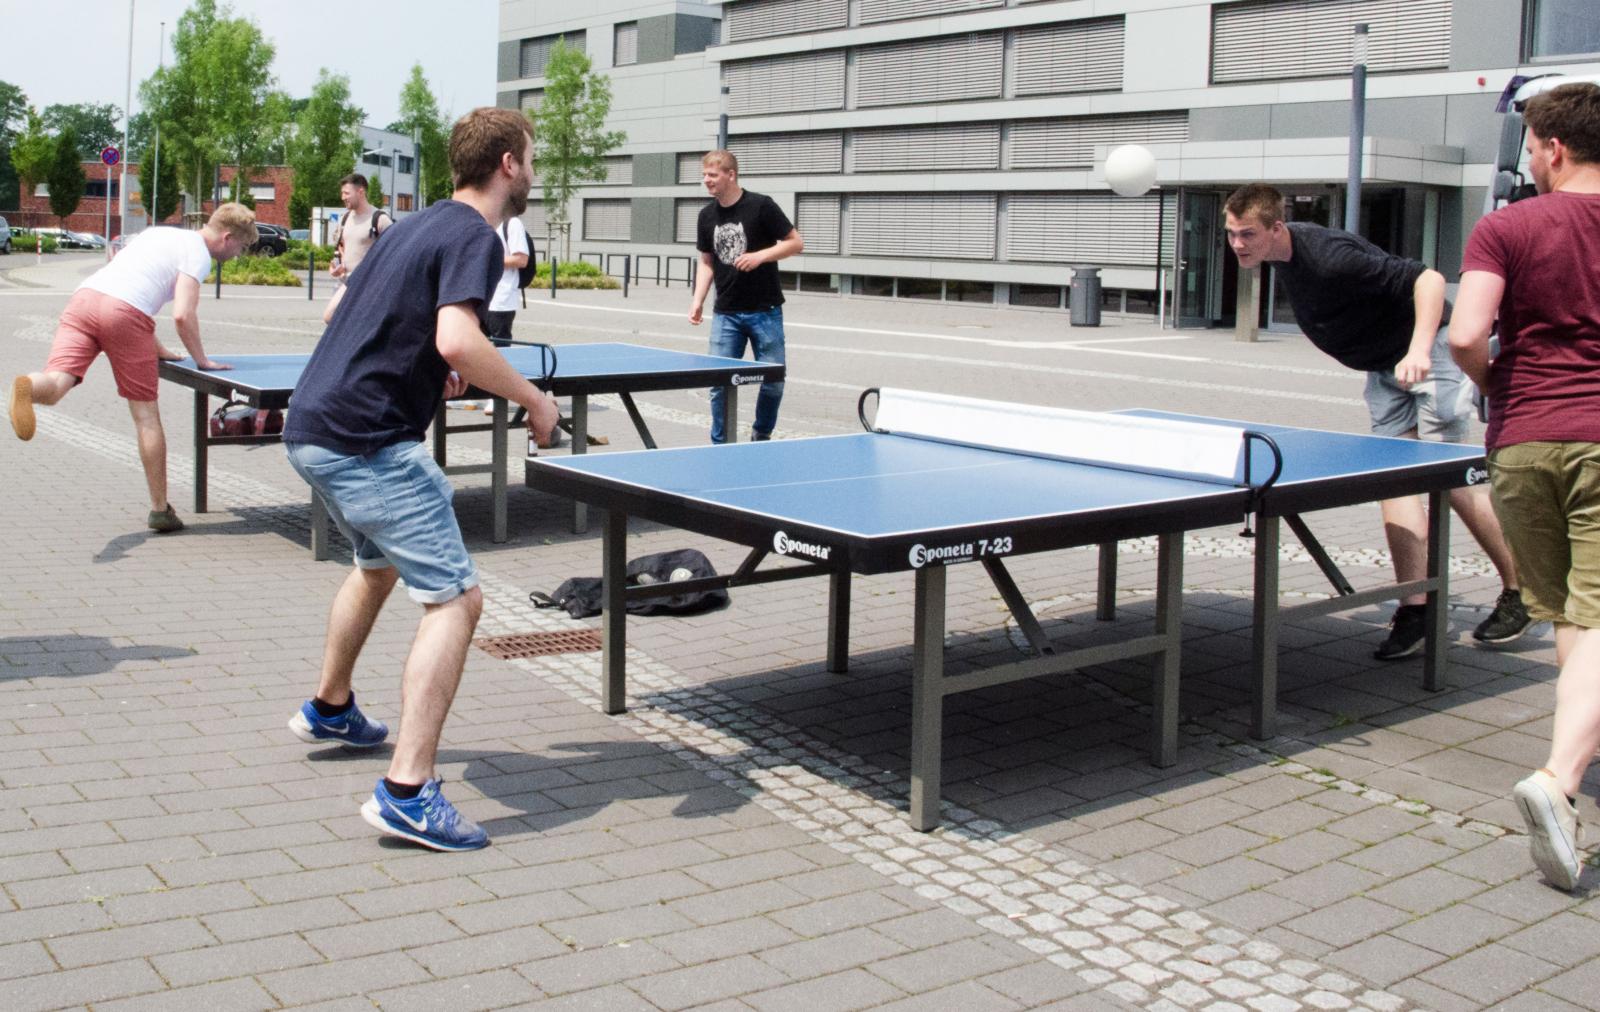 Ein Sporttag oder eine Sportwoche mit Wettbewerben in verschiedenen Teamsportarten: Das ist eine der bislang eingereichten Ideen. (Foto: FH Münster/Theresa Gerks)